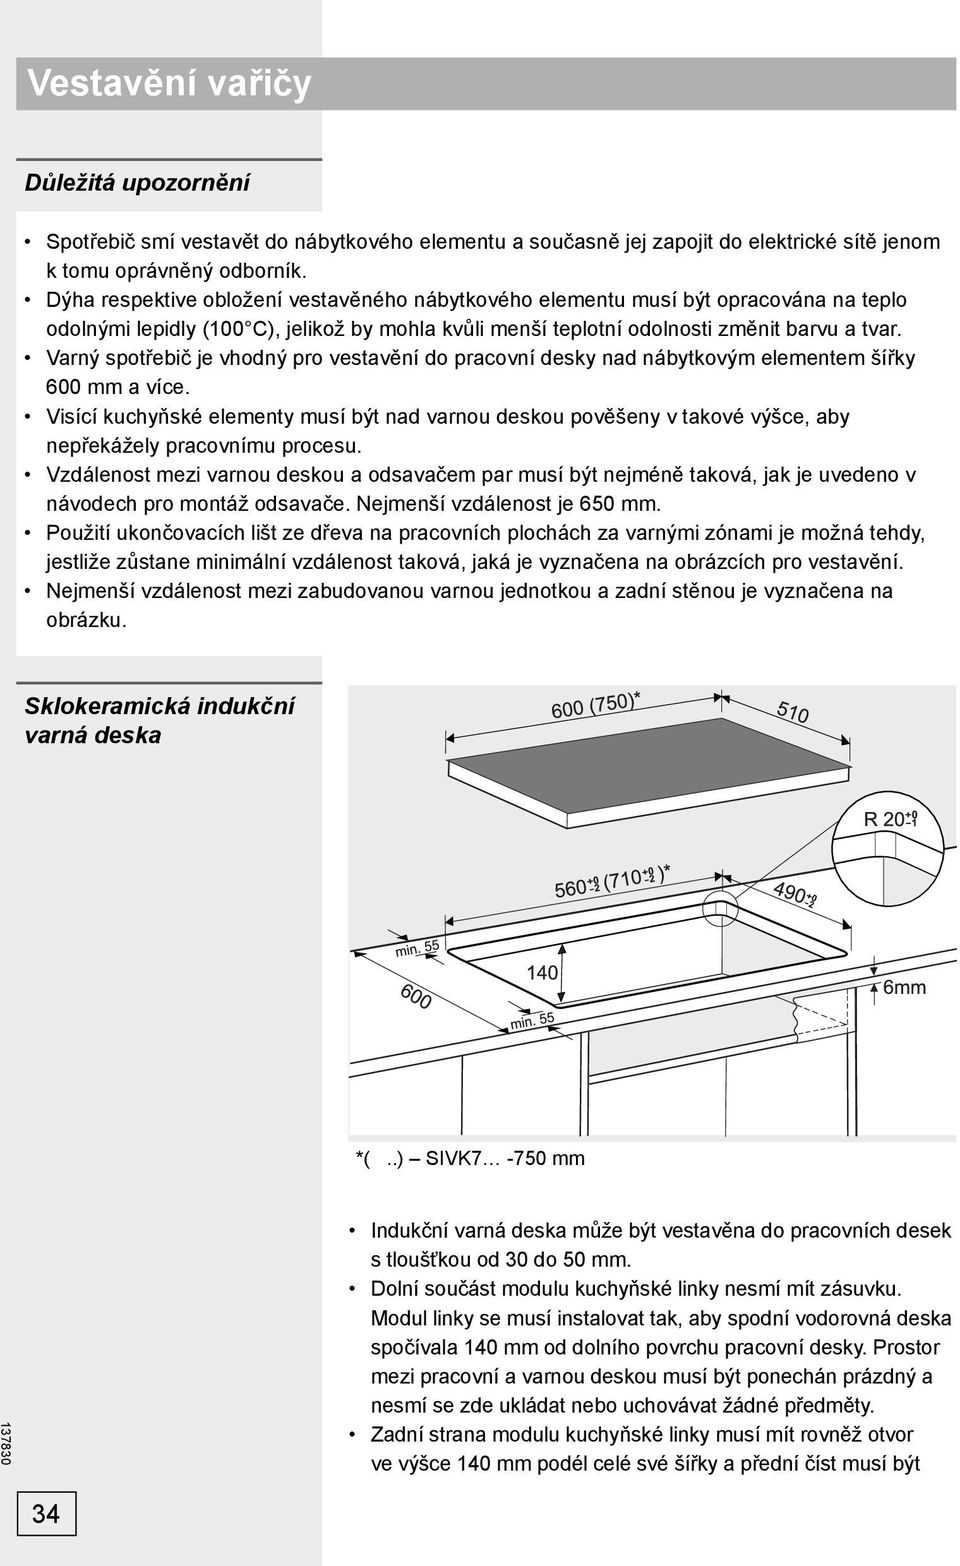 Varný spotřebič je vhodný pro vestavění do pracovní desky nad nábytkovým elementem šířky 600 mm a více.